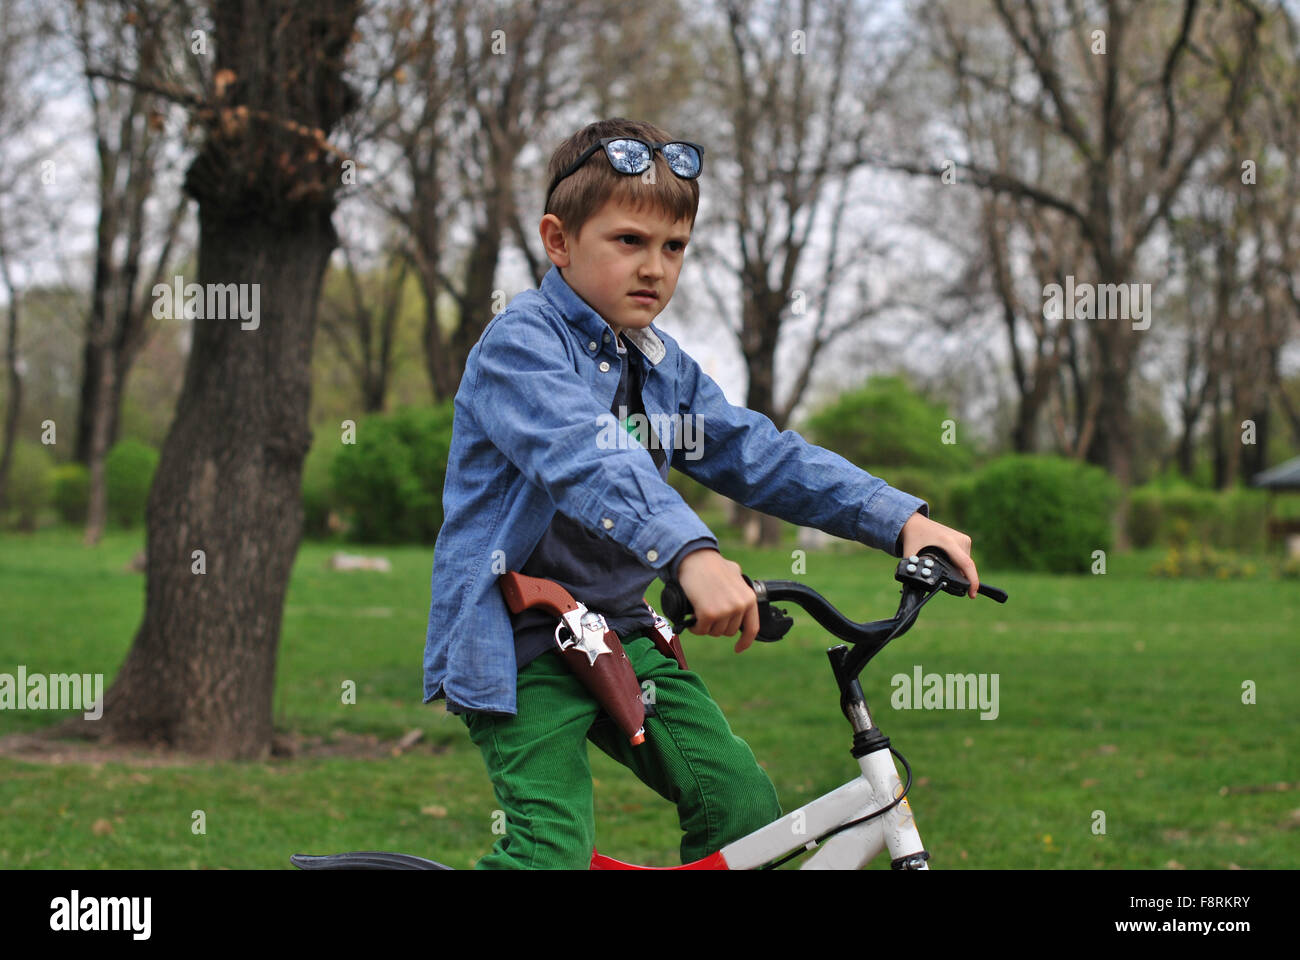 Junge, die vorgibt, ein Polizist auf einem Fahrrad Stockfoto